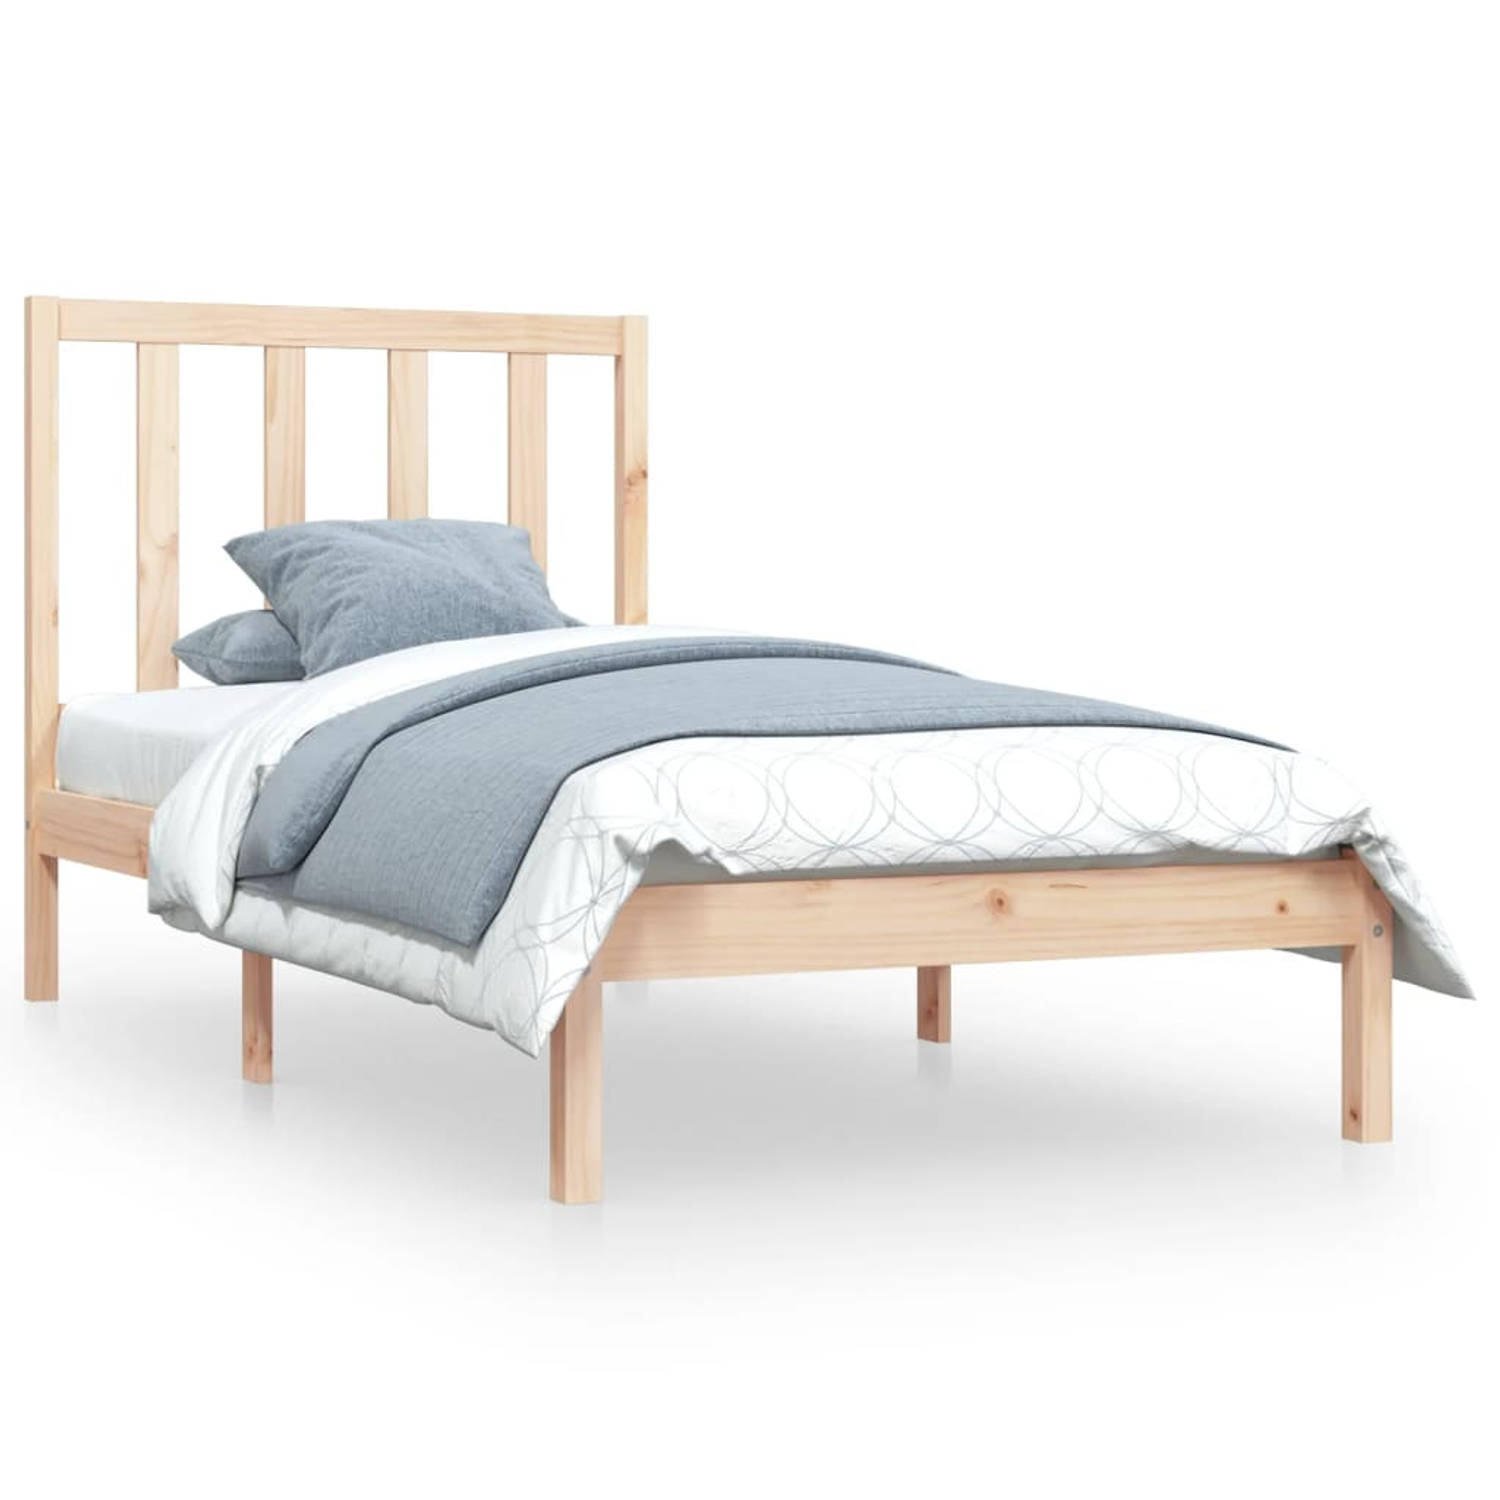 The Living Store Bedframe massief grenenhout 100x200 cm - Bedframe - Bedframes - Bed - Bedbodem - Ledikant - Bed Frame - Massief Houten Bedframe - Slaapmeubel - Bedden - Bedbodems